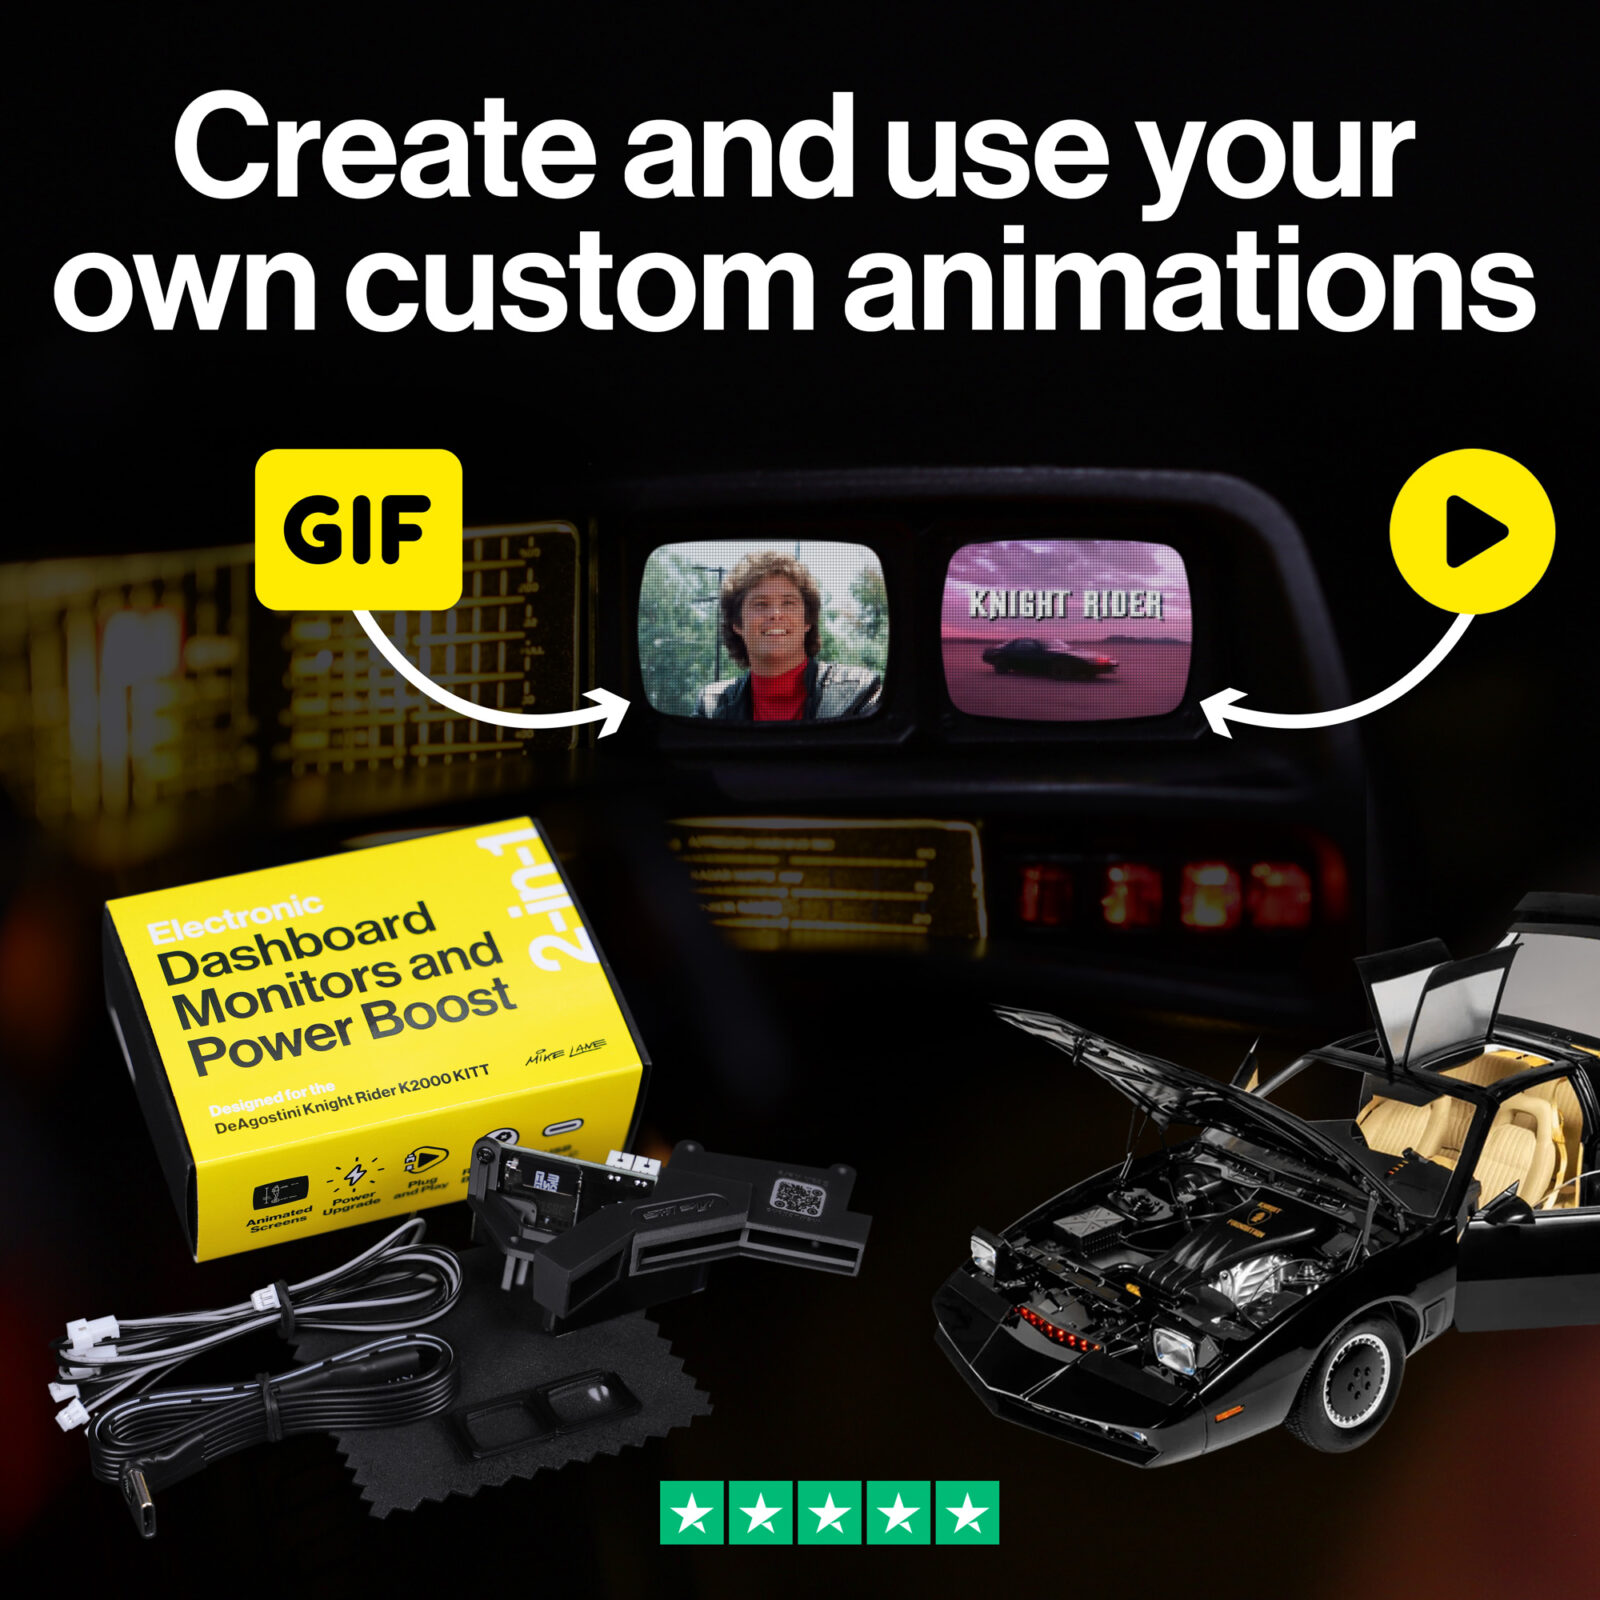 Using custom GIFs for your KITT monitors